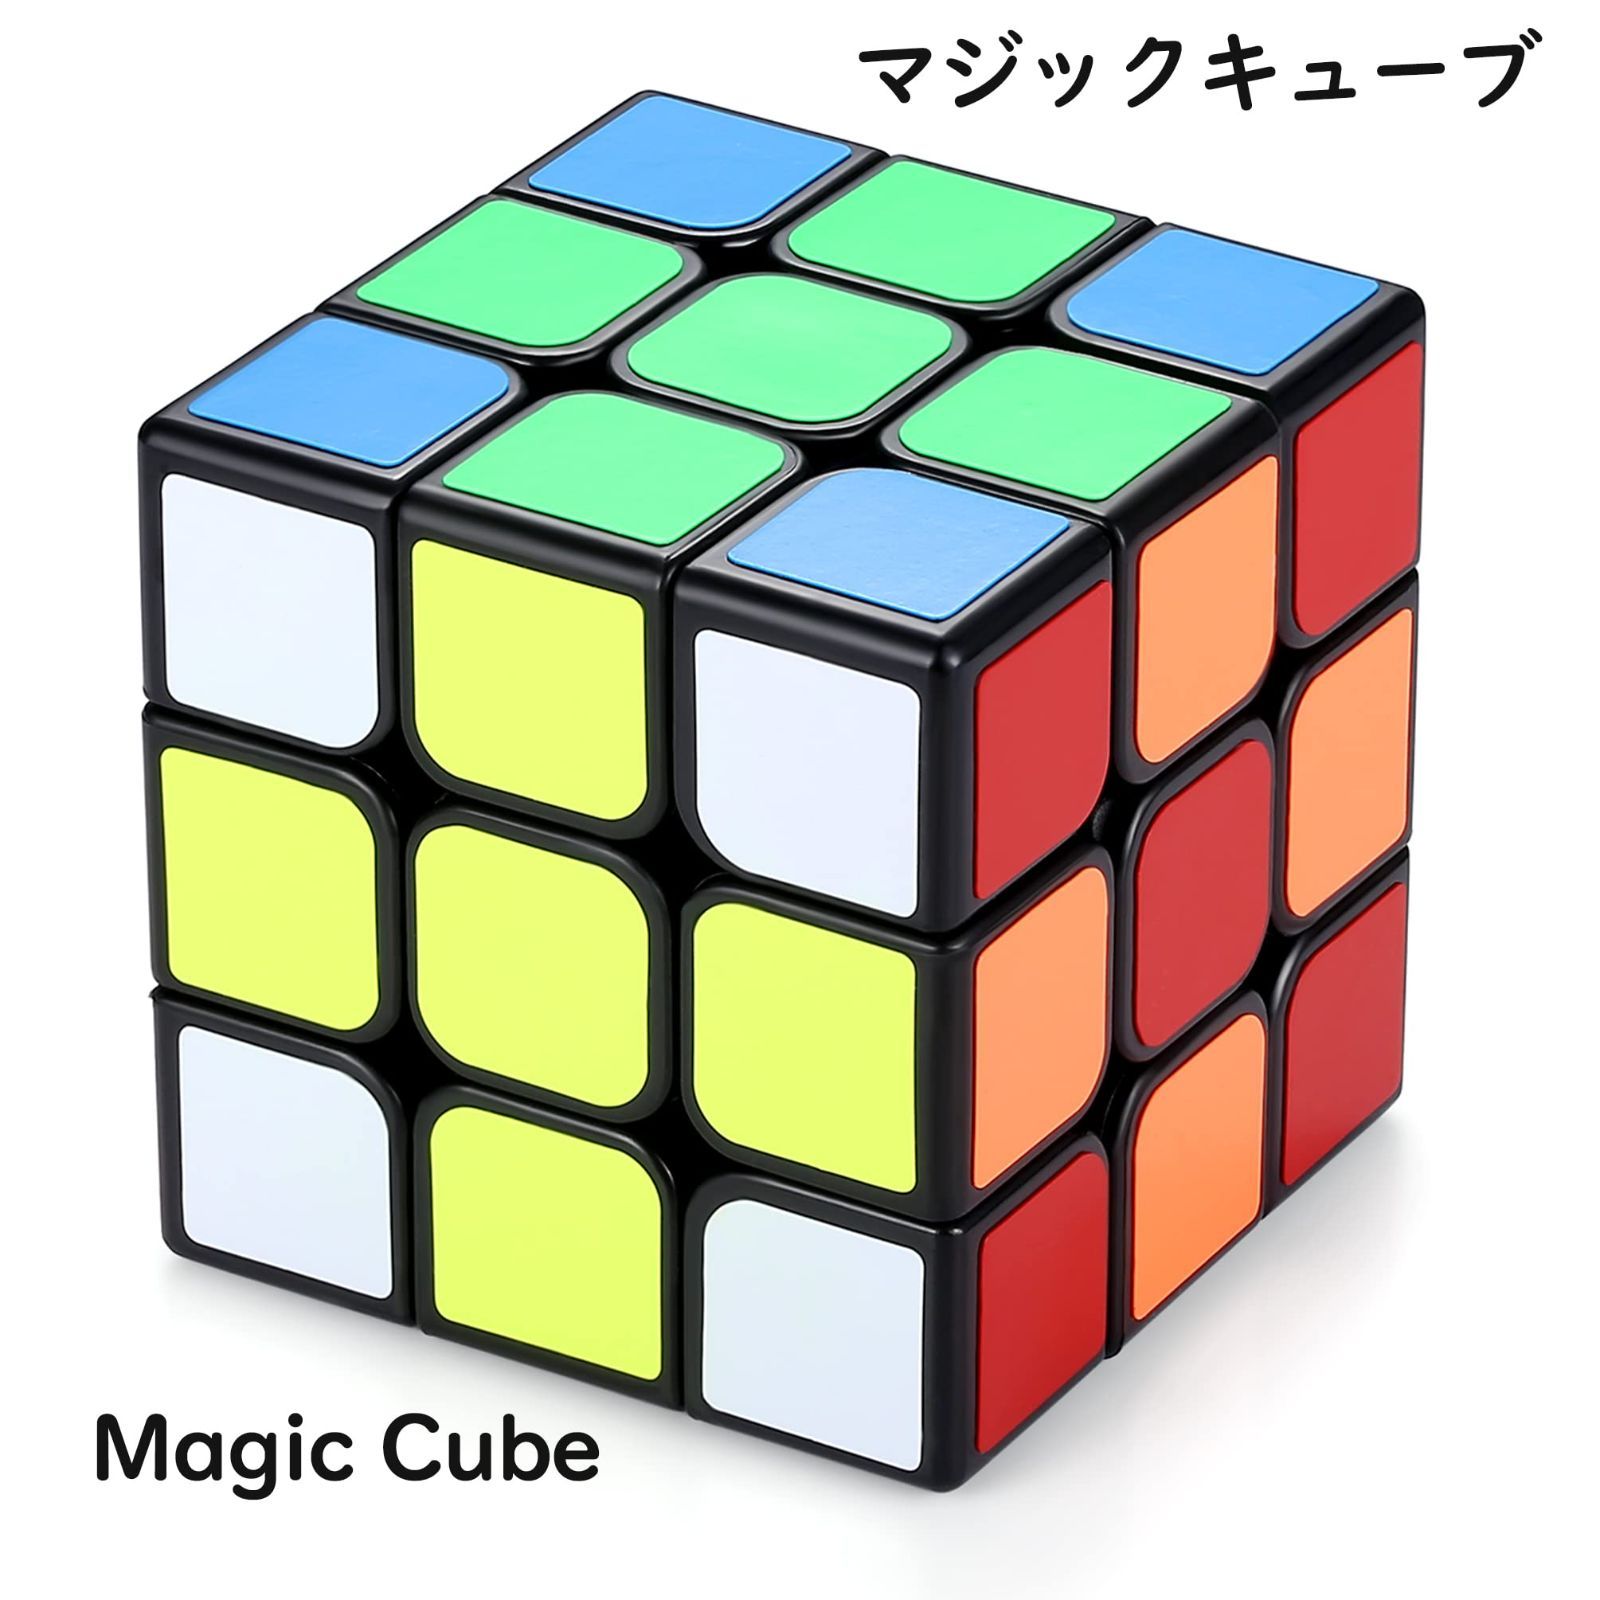 値引 マジックキューブ Magic Cube 魔方 競技専用キューブ 回転スムーズ 立体パズル 世界基準配色 競技版2